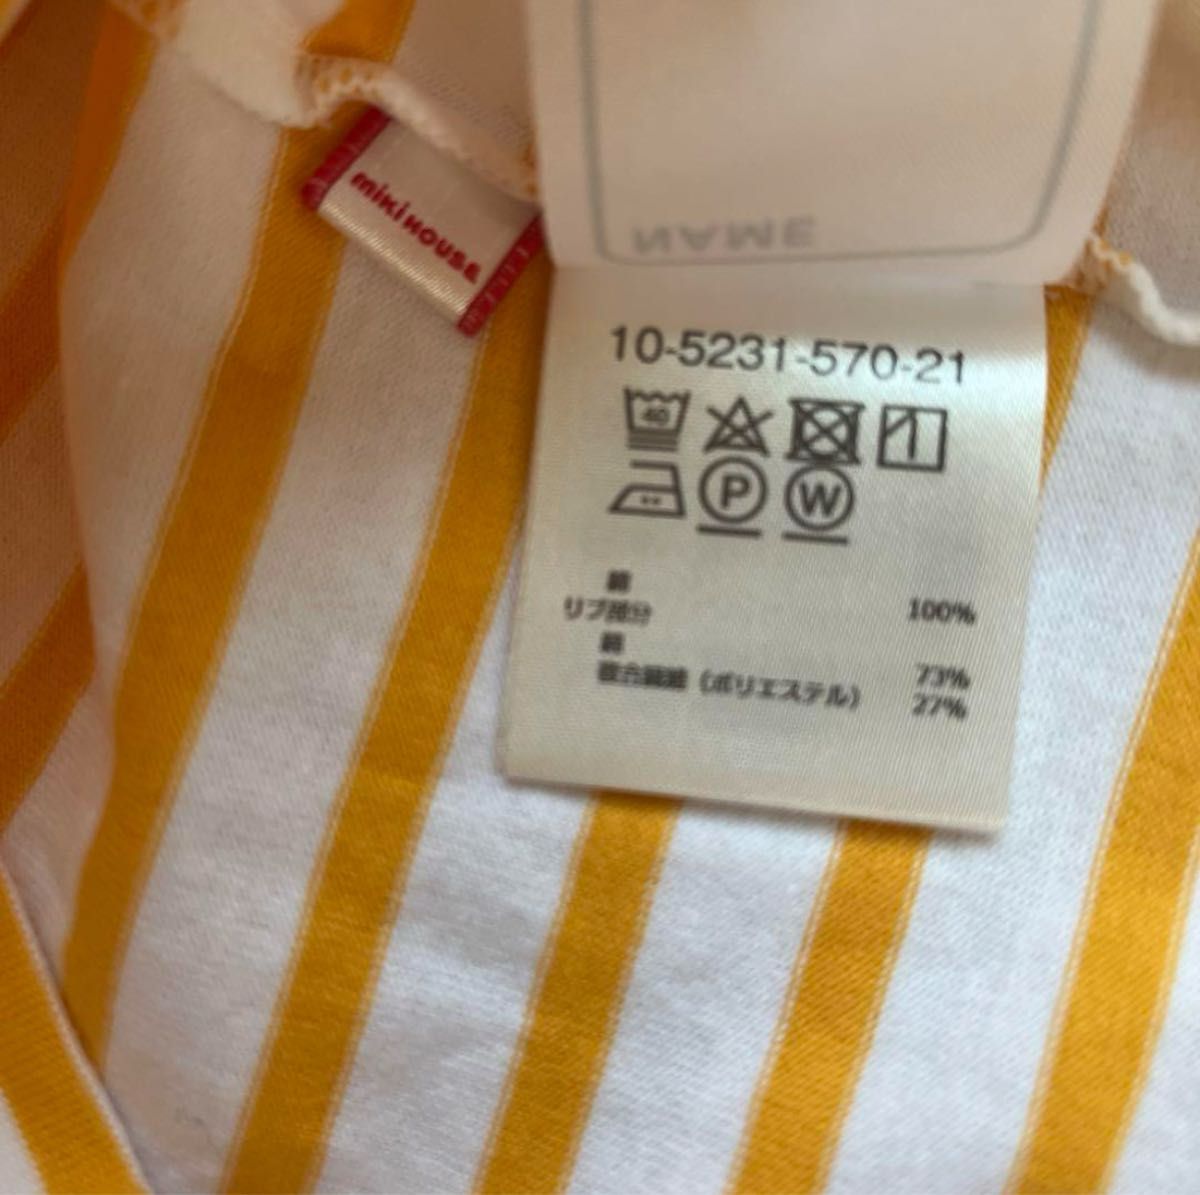 【ミキハウス】ロゴ ボーダー 黄色 半袖 Tシャツ 100